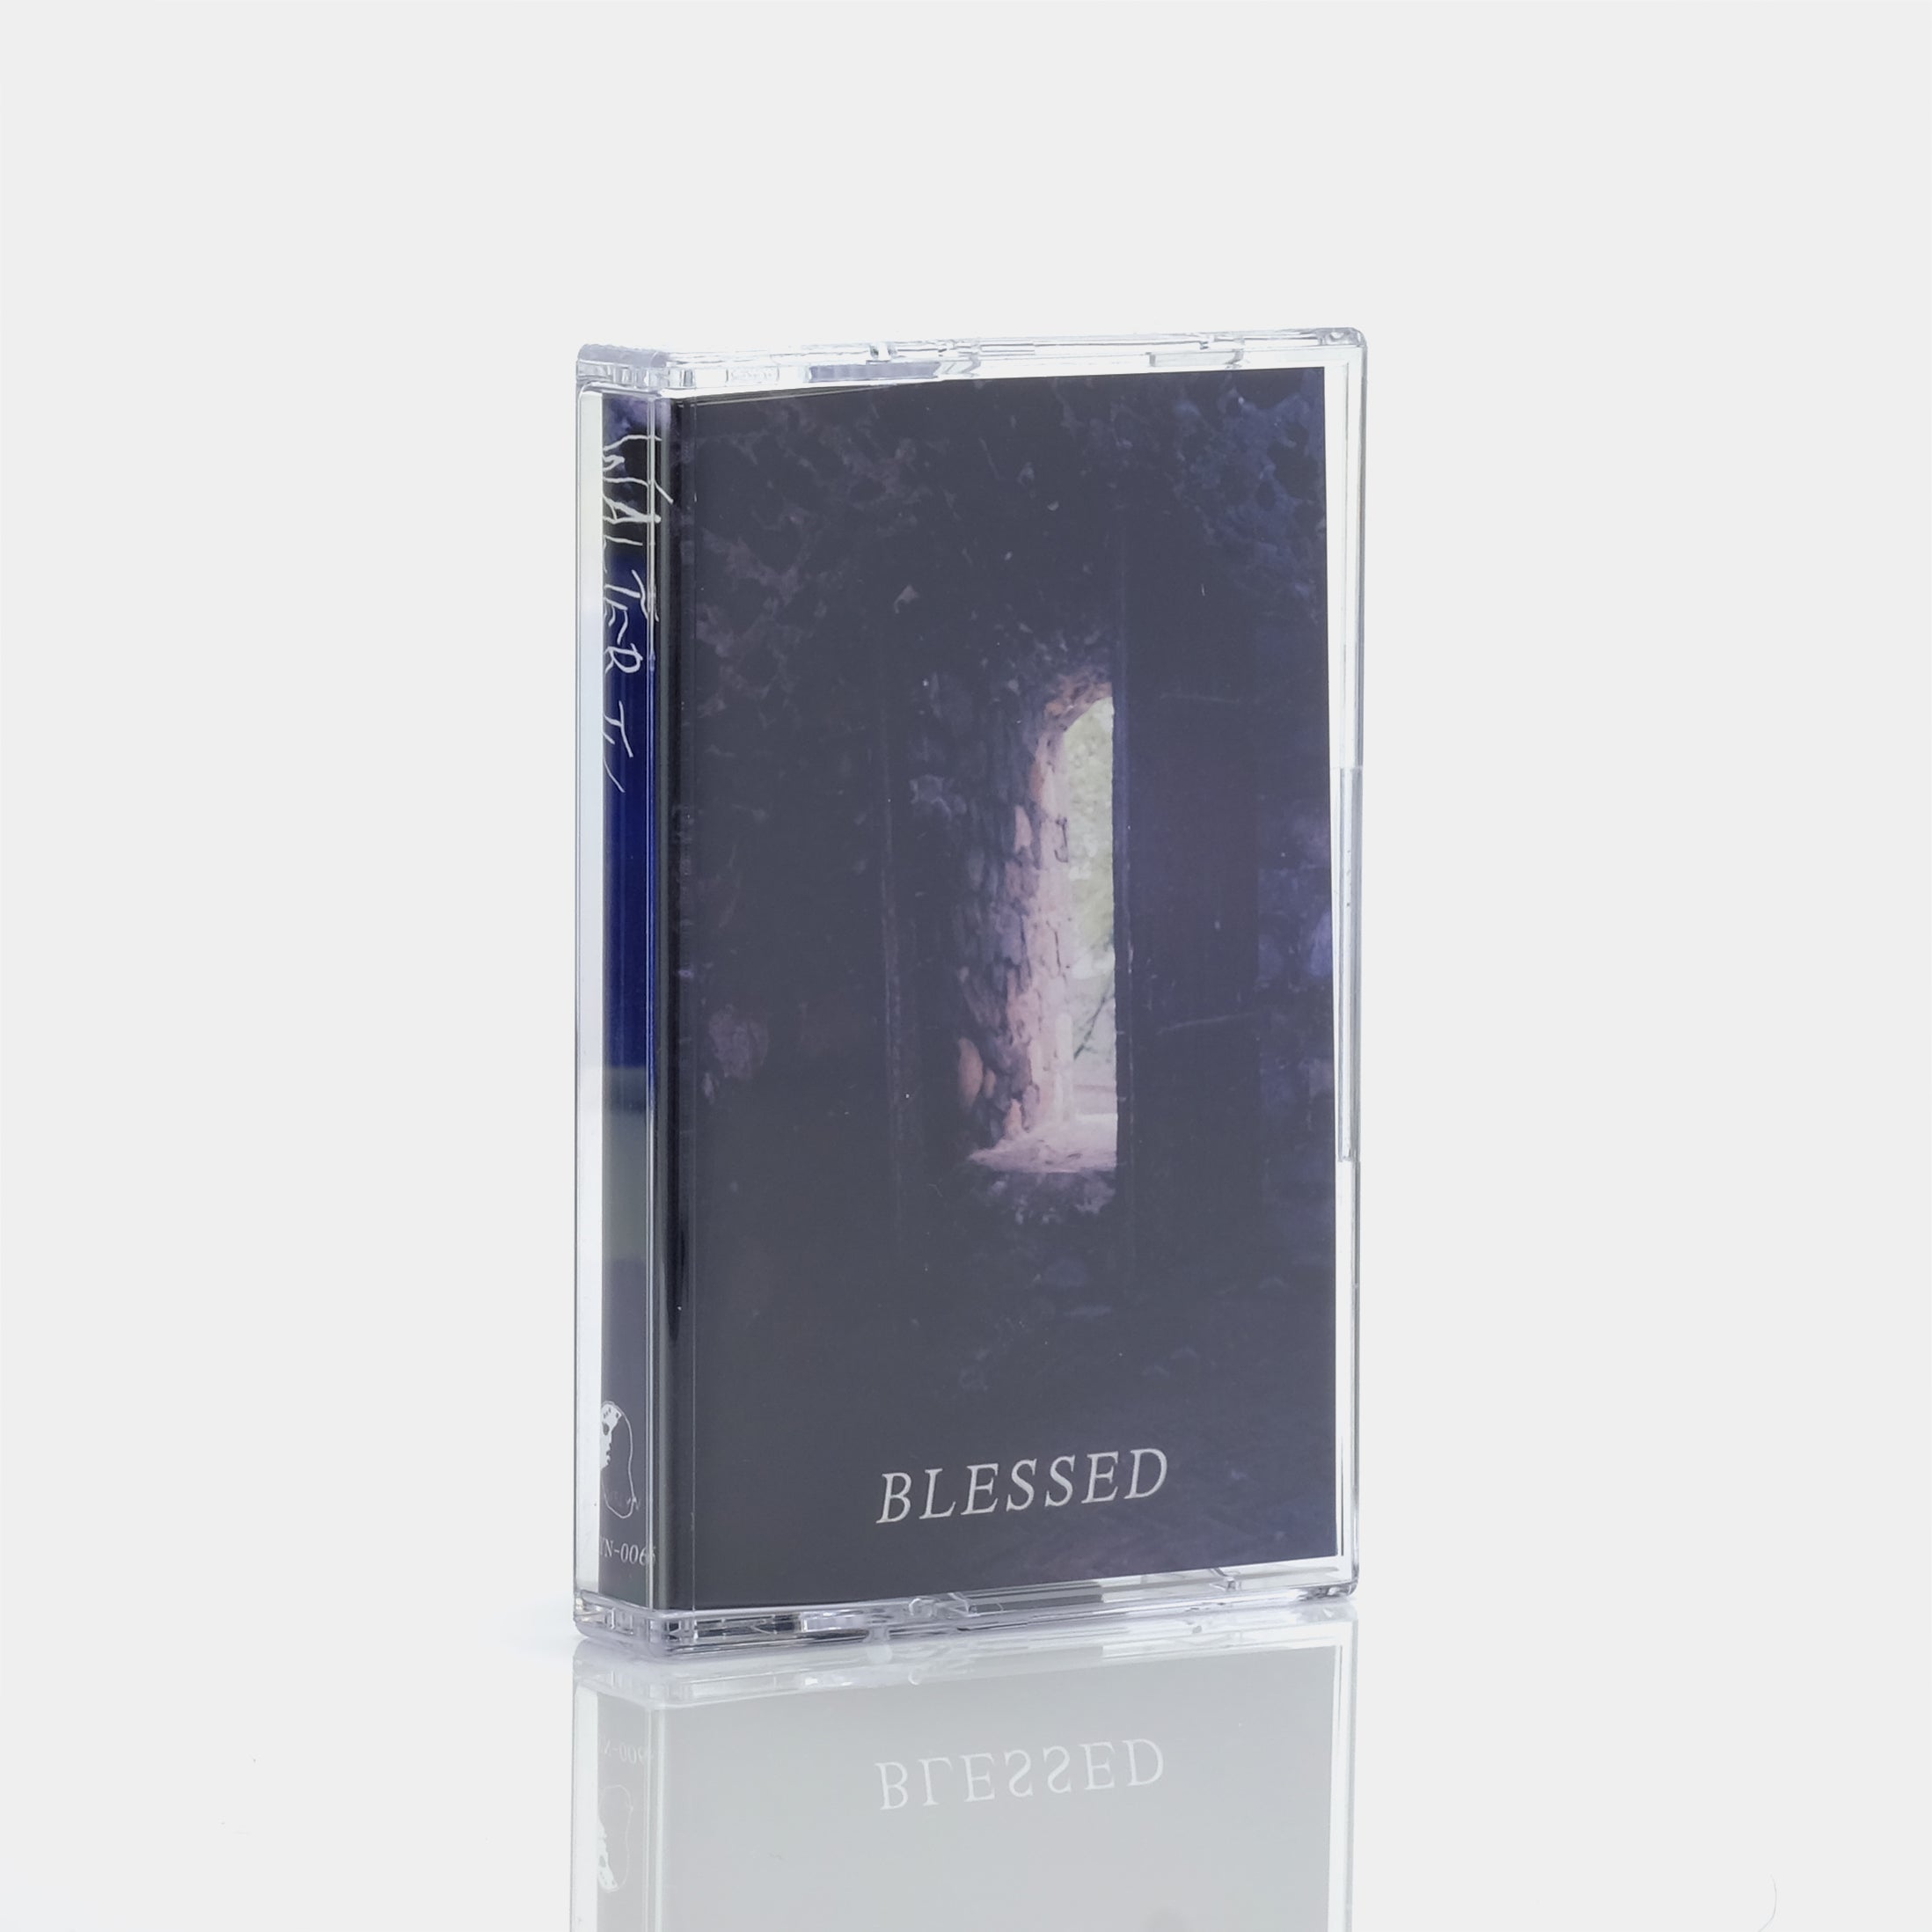 Walter TV - Blessed Cassette Tape